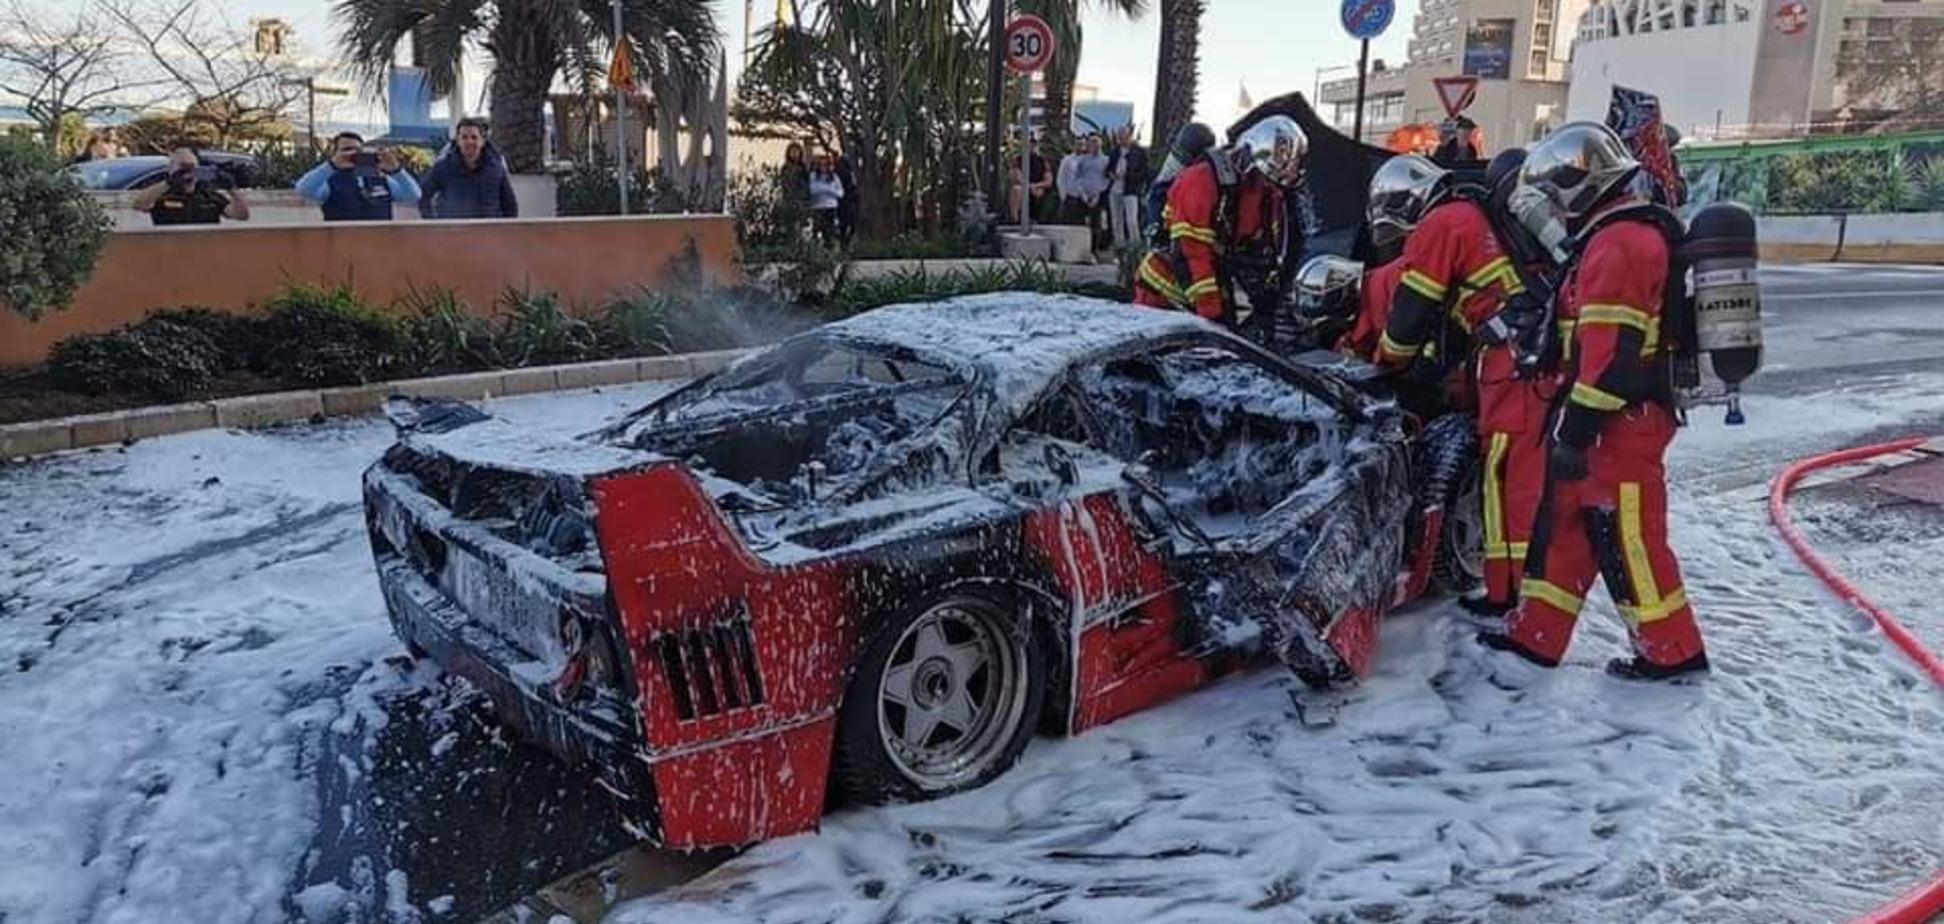 Величайшее авто за 1 млн евро сгорело прямо посреди дороги